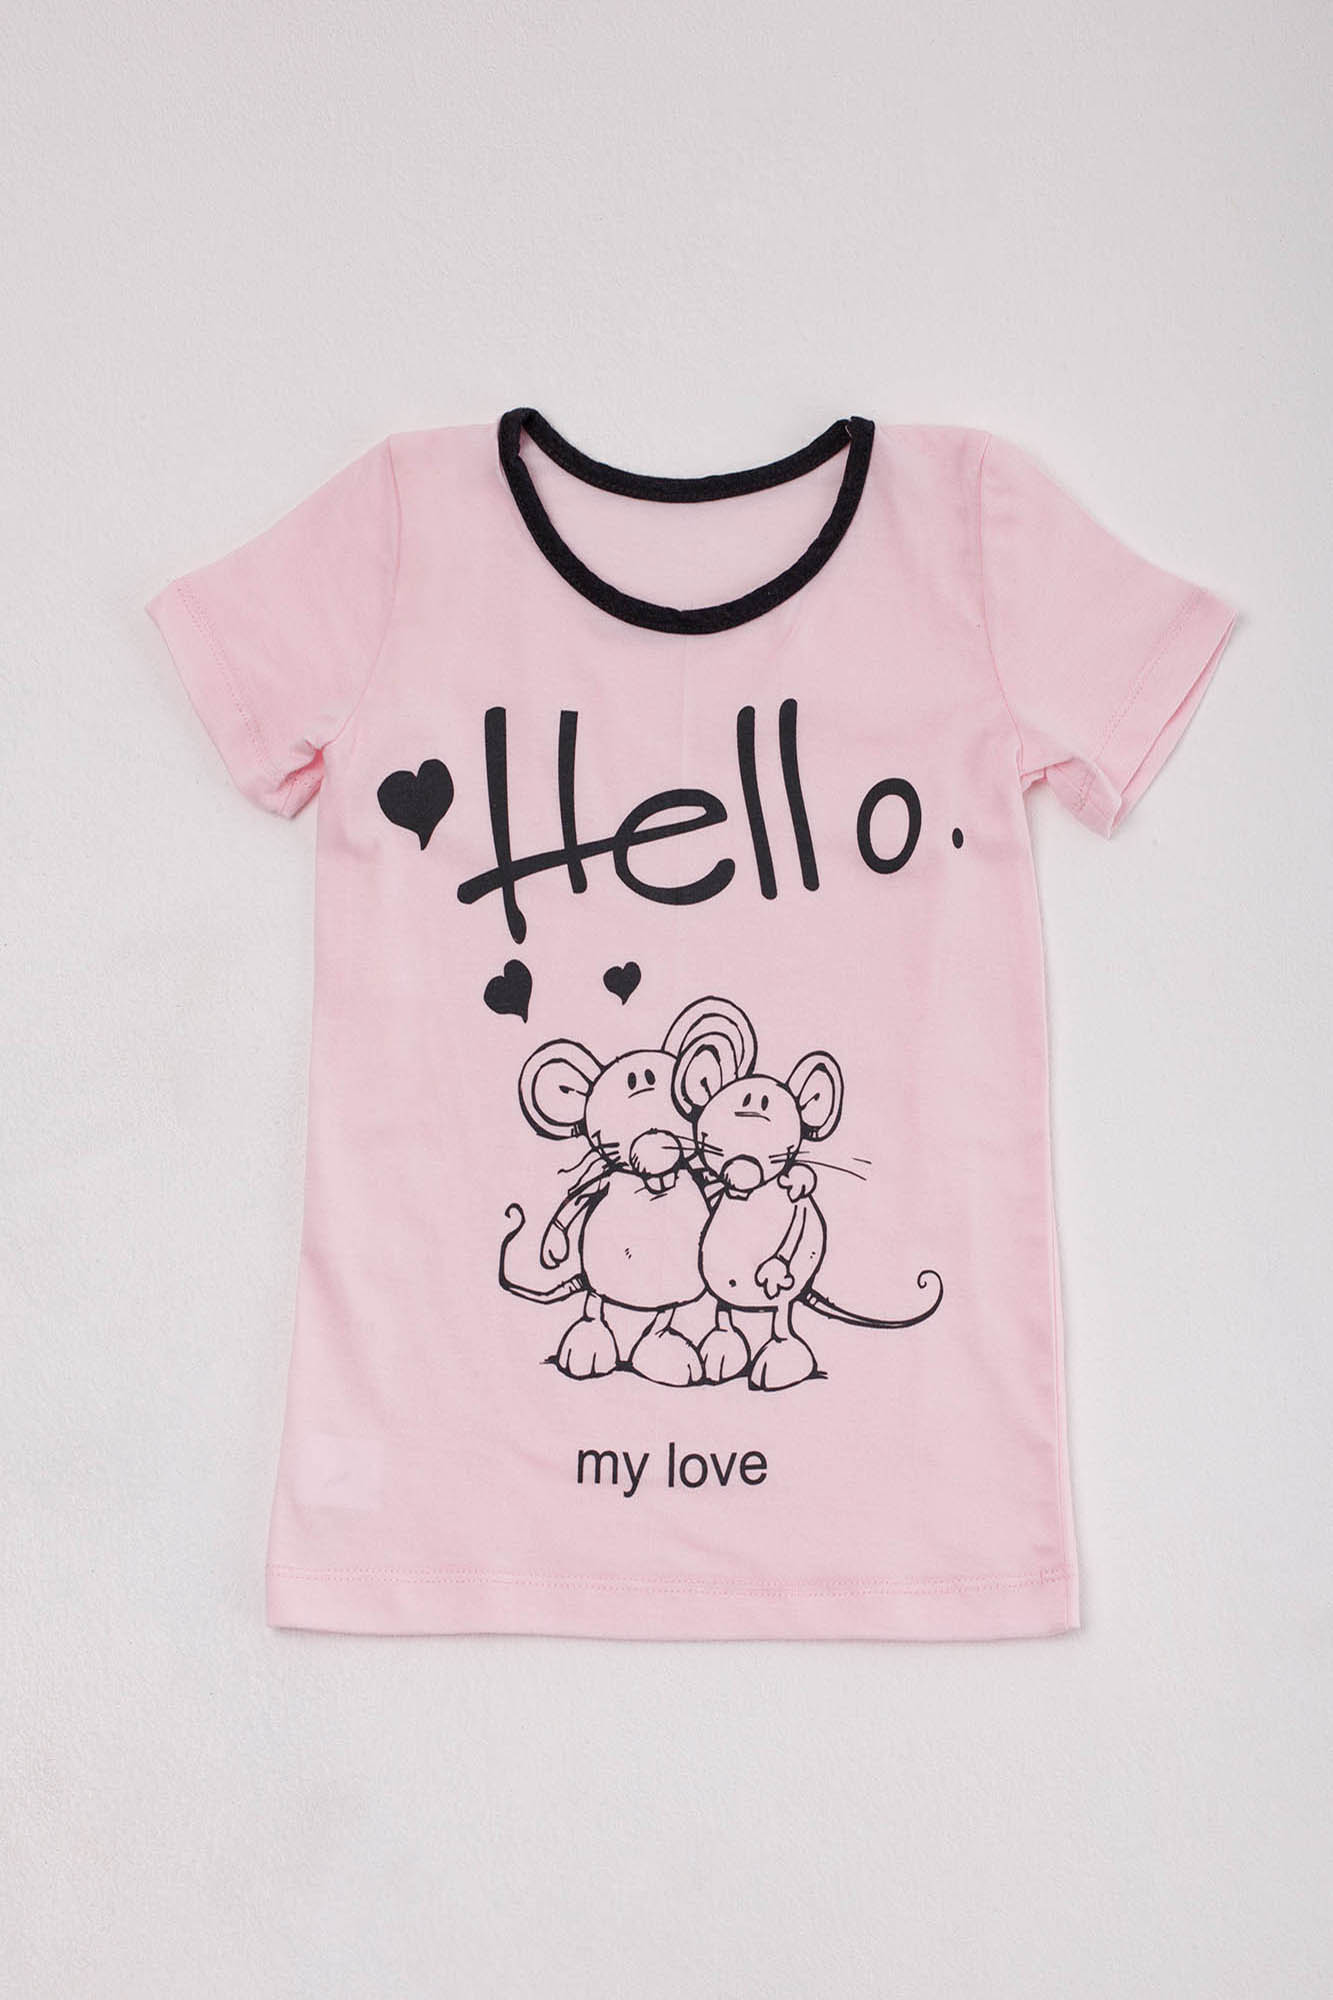 Детская футболка Keeley Цвет: Светло-Розовый (5-6 лет), размер 5-6 лет zar680350 Детская футболка Keeley Цвет: Светло-Розовый (5-6 лет) - фото 1